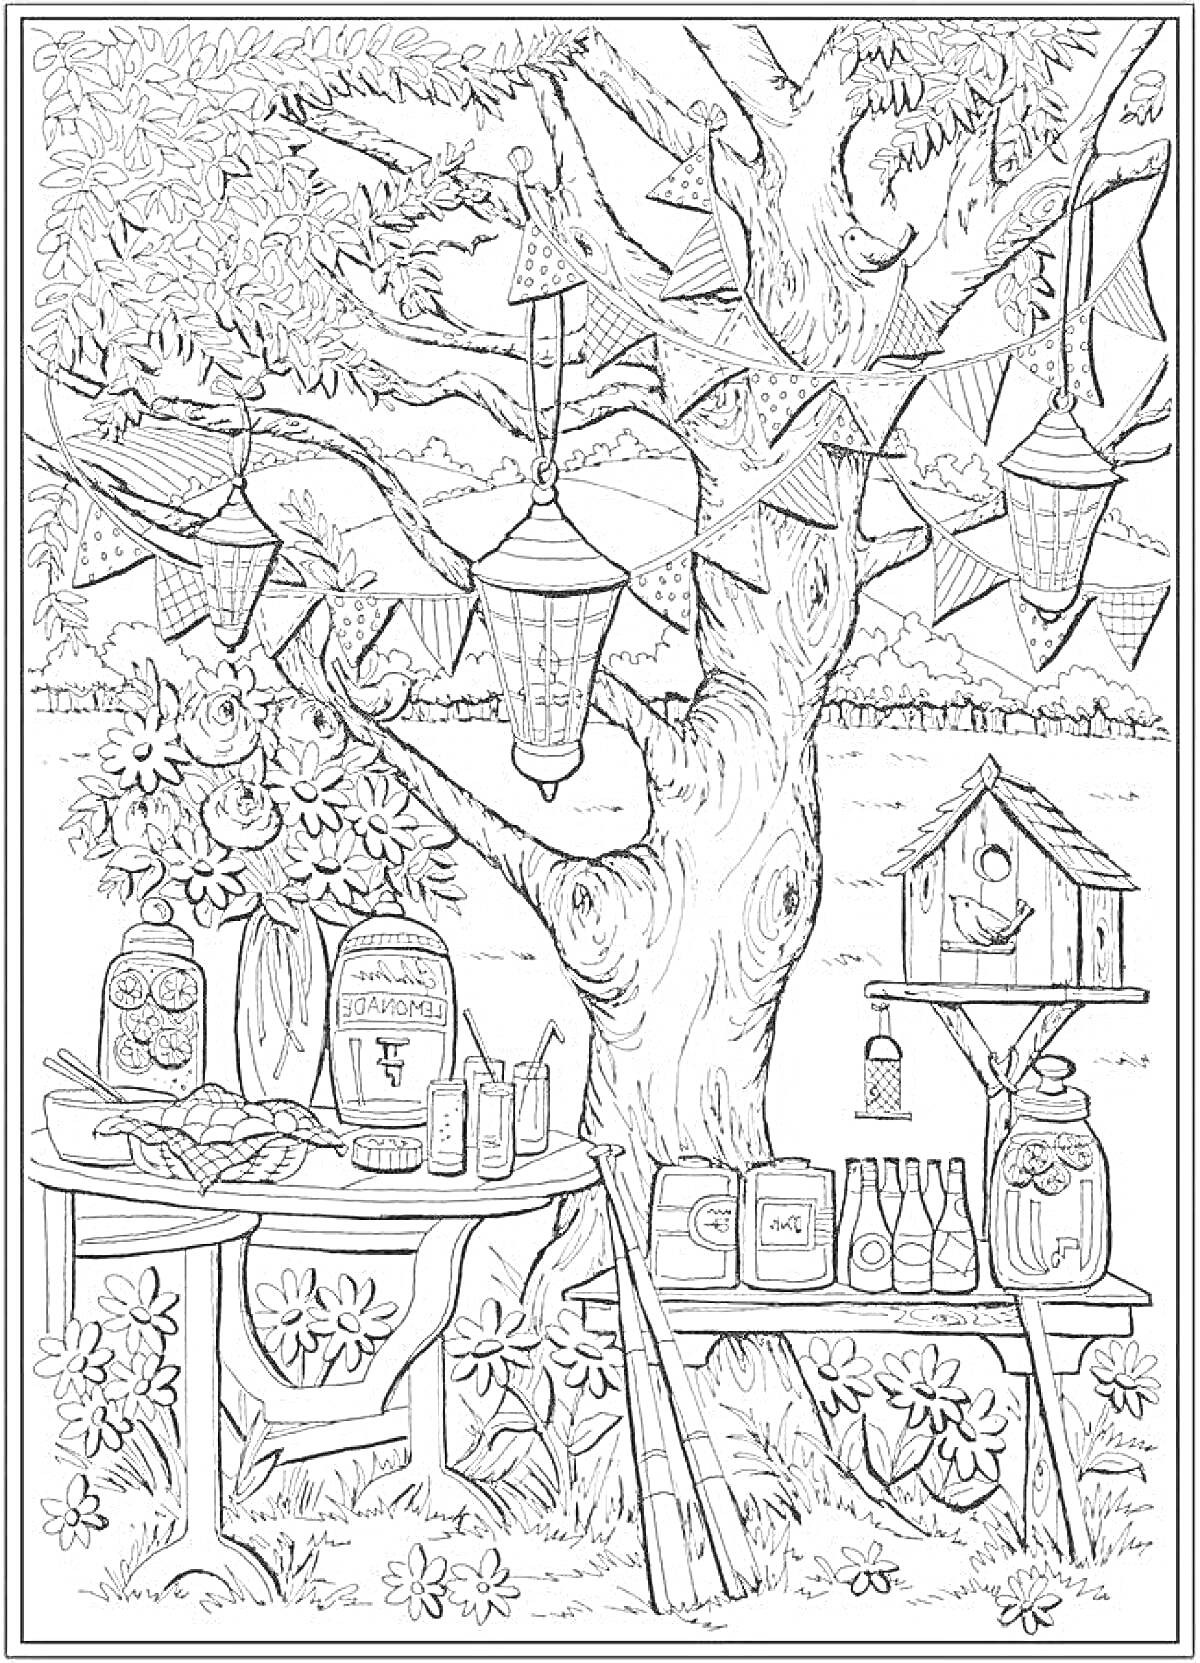 Раскраска Пикник на природе с гирляндами, фонариками и декоративными элементами на дереве, стол с угощениями и напитками, скворечник и садовый декор